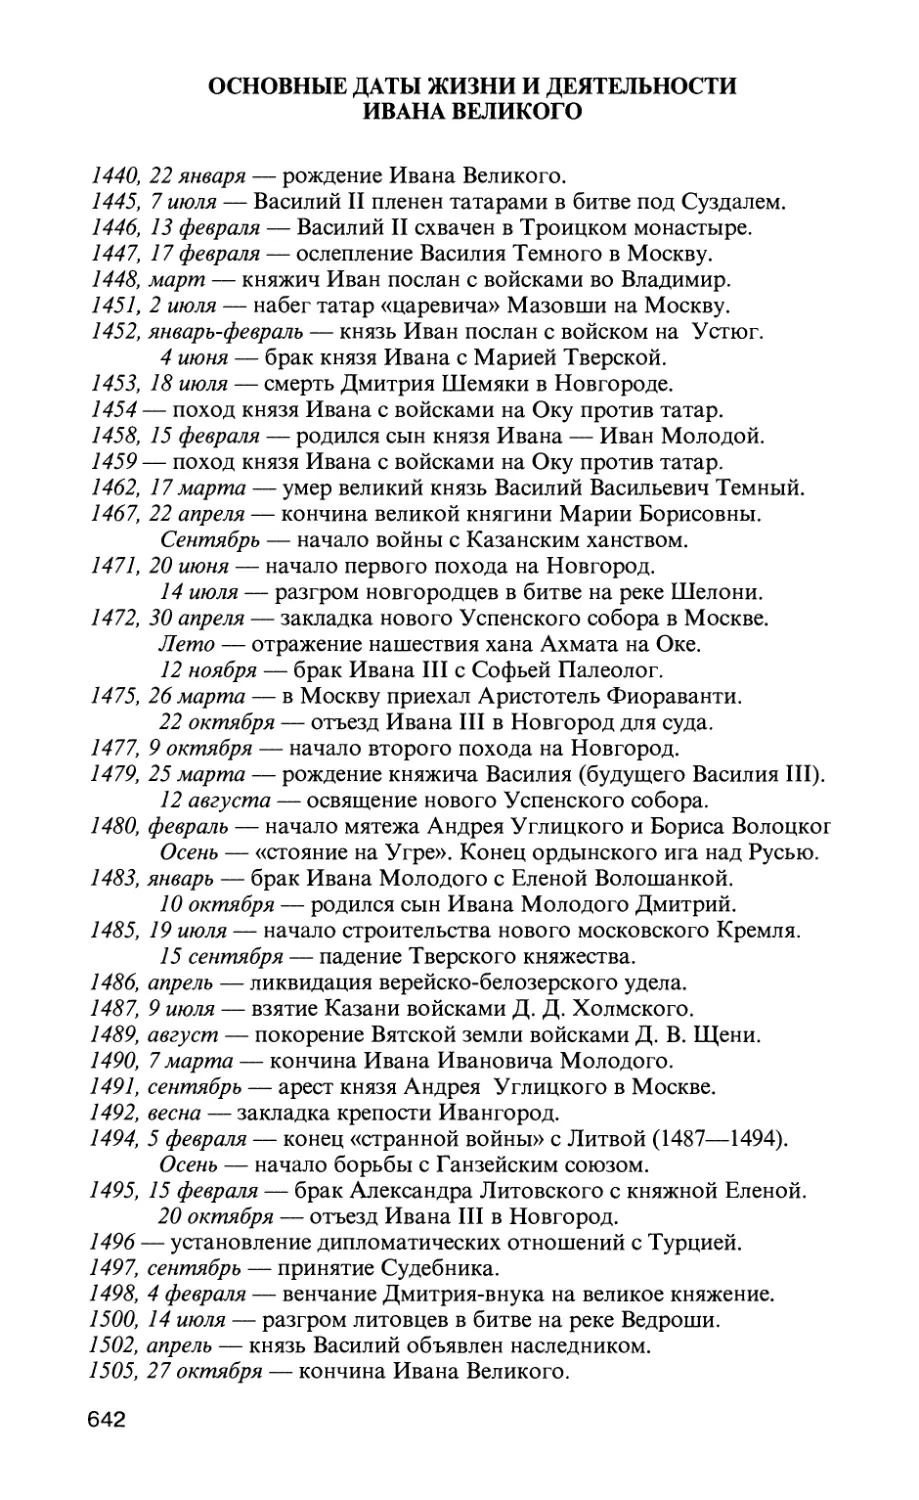 Основные даты жизни и деятельности Ивана Великого